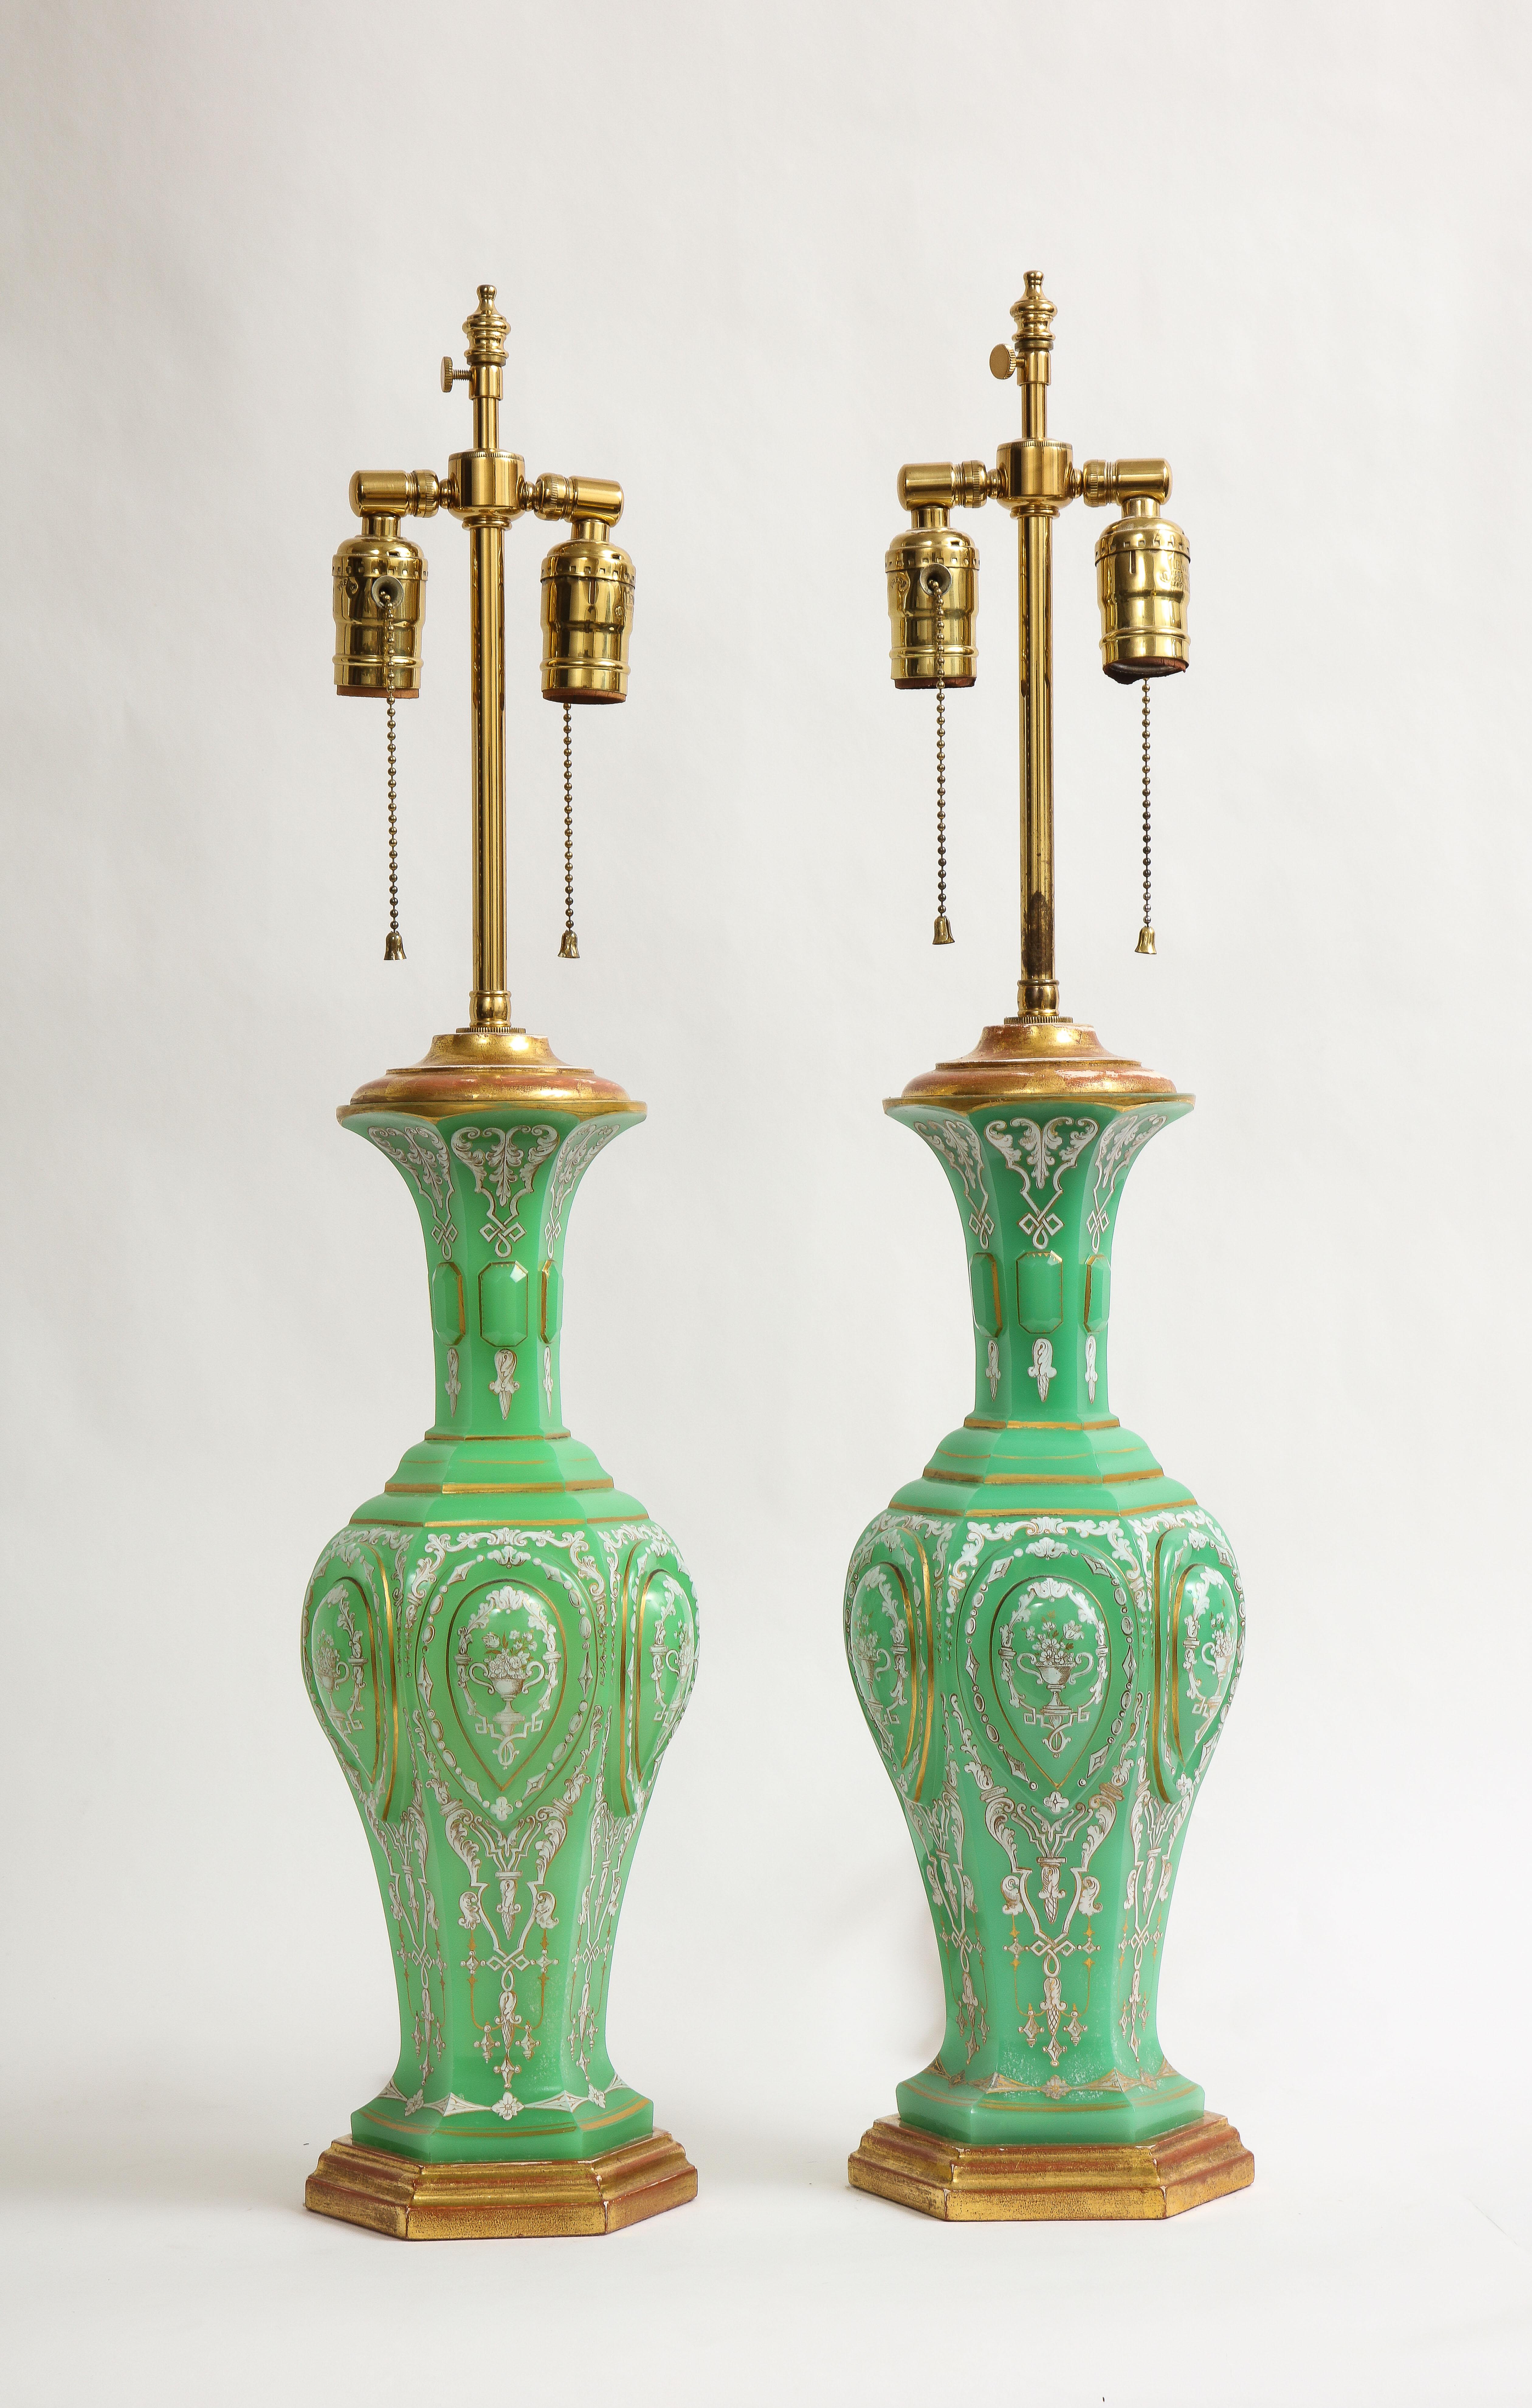 Ein unglaubliches Paar französischer Vergoldungslampen aus dem 19. Jahrhundert mit smaragdgrünem Opalkristall und Emaille, die Baccarat zugeschrieben werden. Jedes dieser Schmuckstücke besteht aus feinstem französischen smaragdgrünen